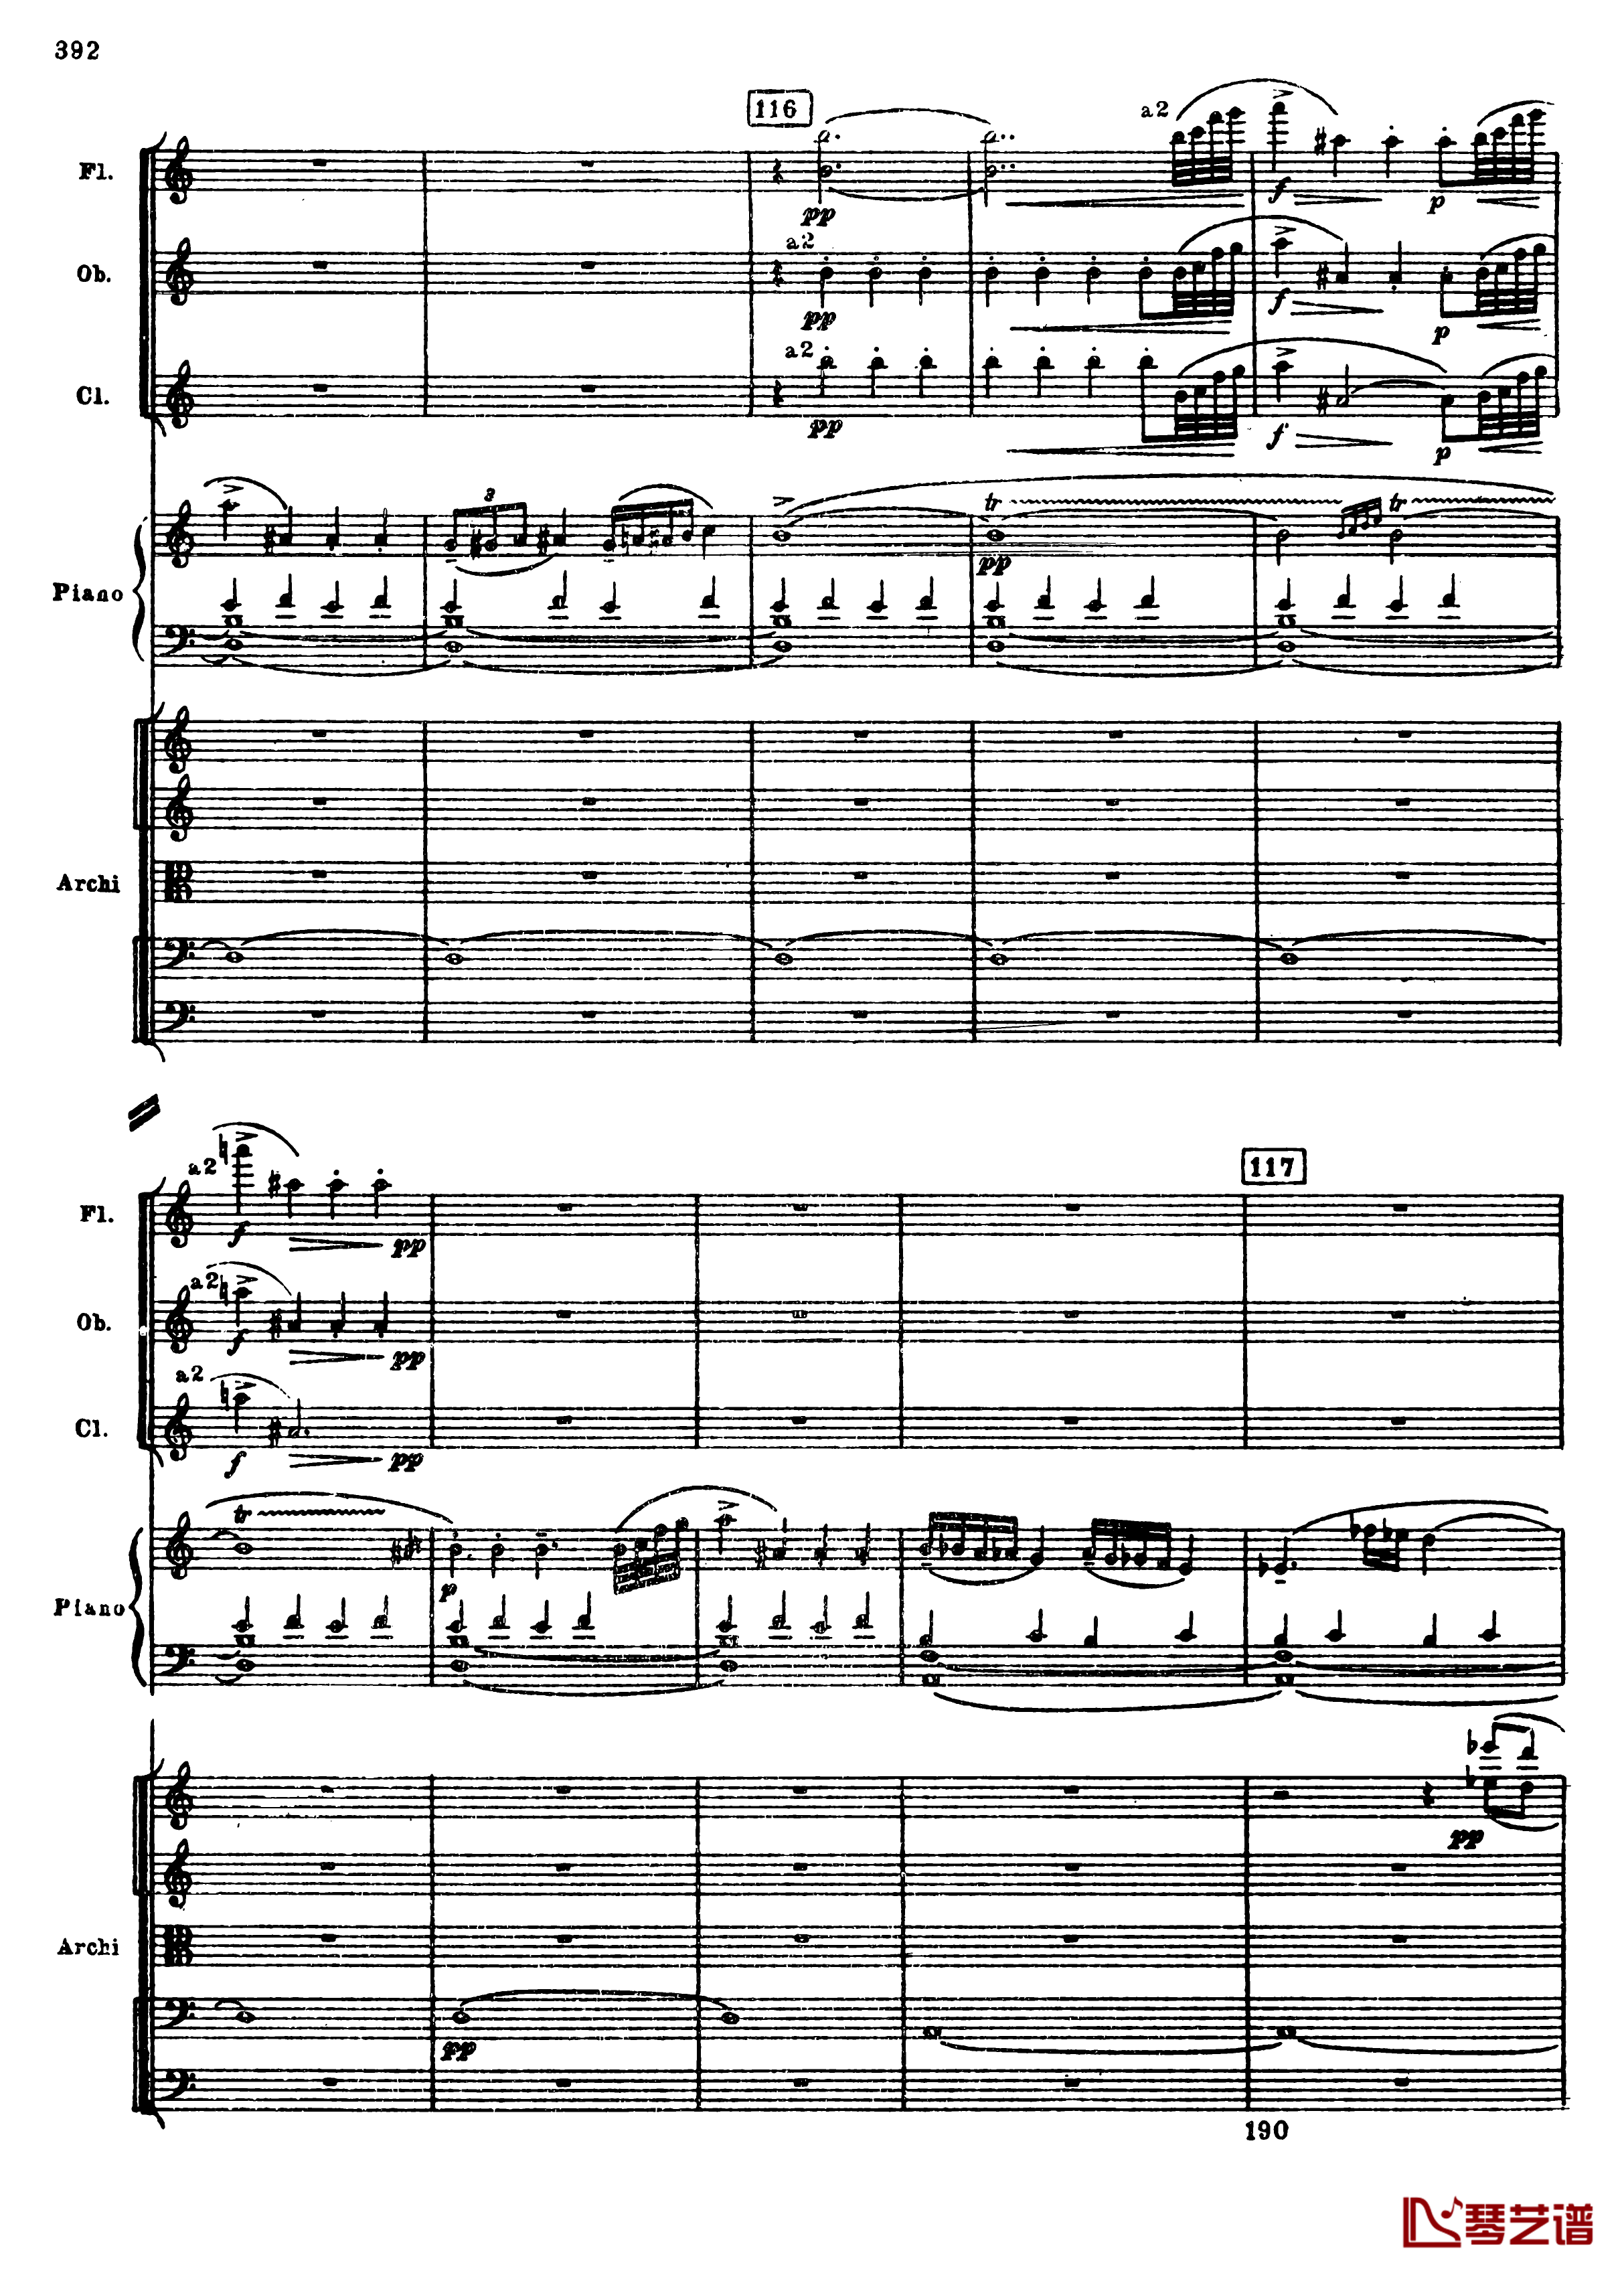 普罗科菲耶夫第三钢琴协奏曲钢琴谱-总谱-普罗科非耶夫124